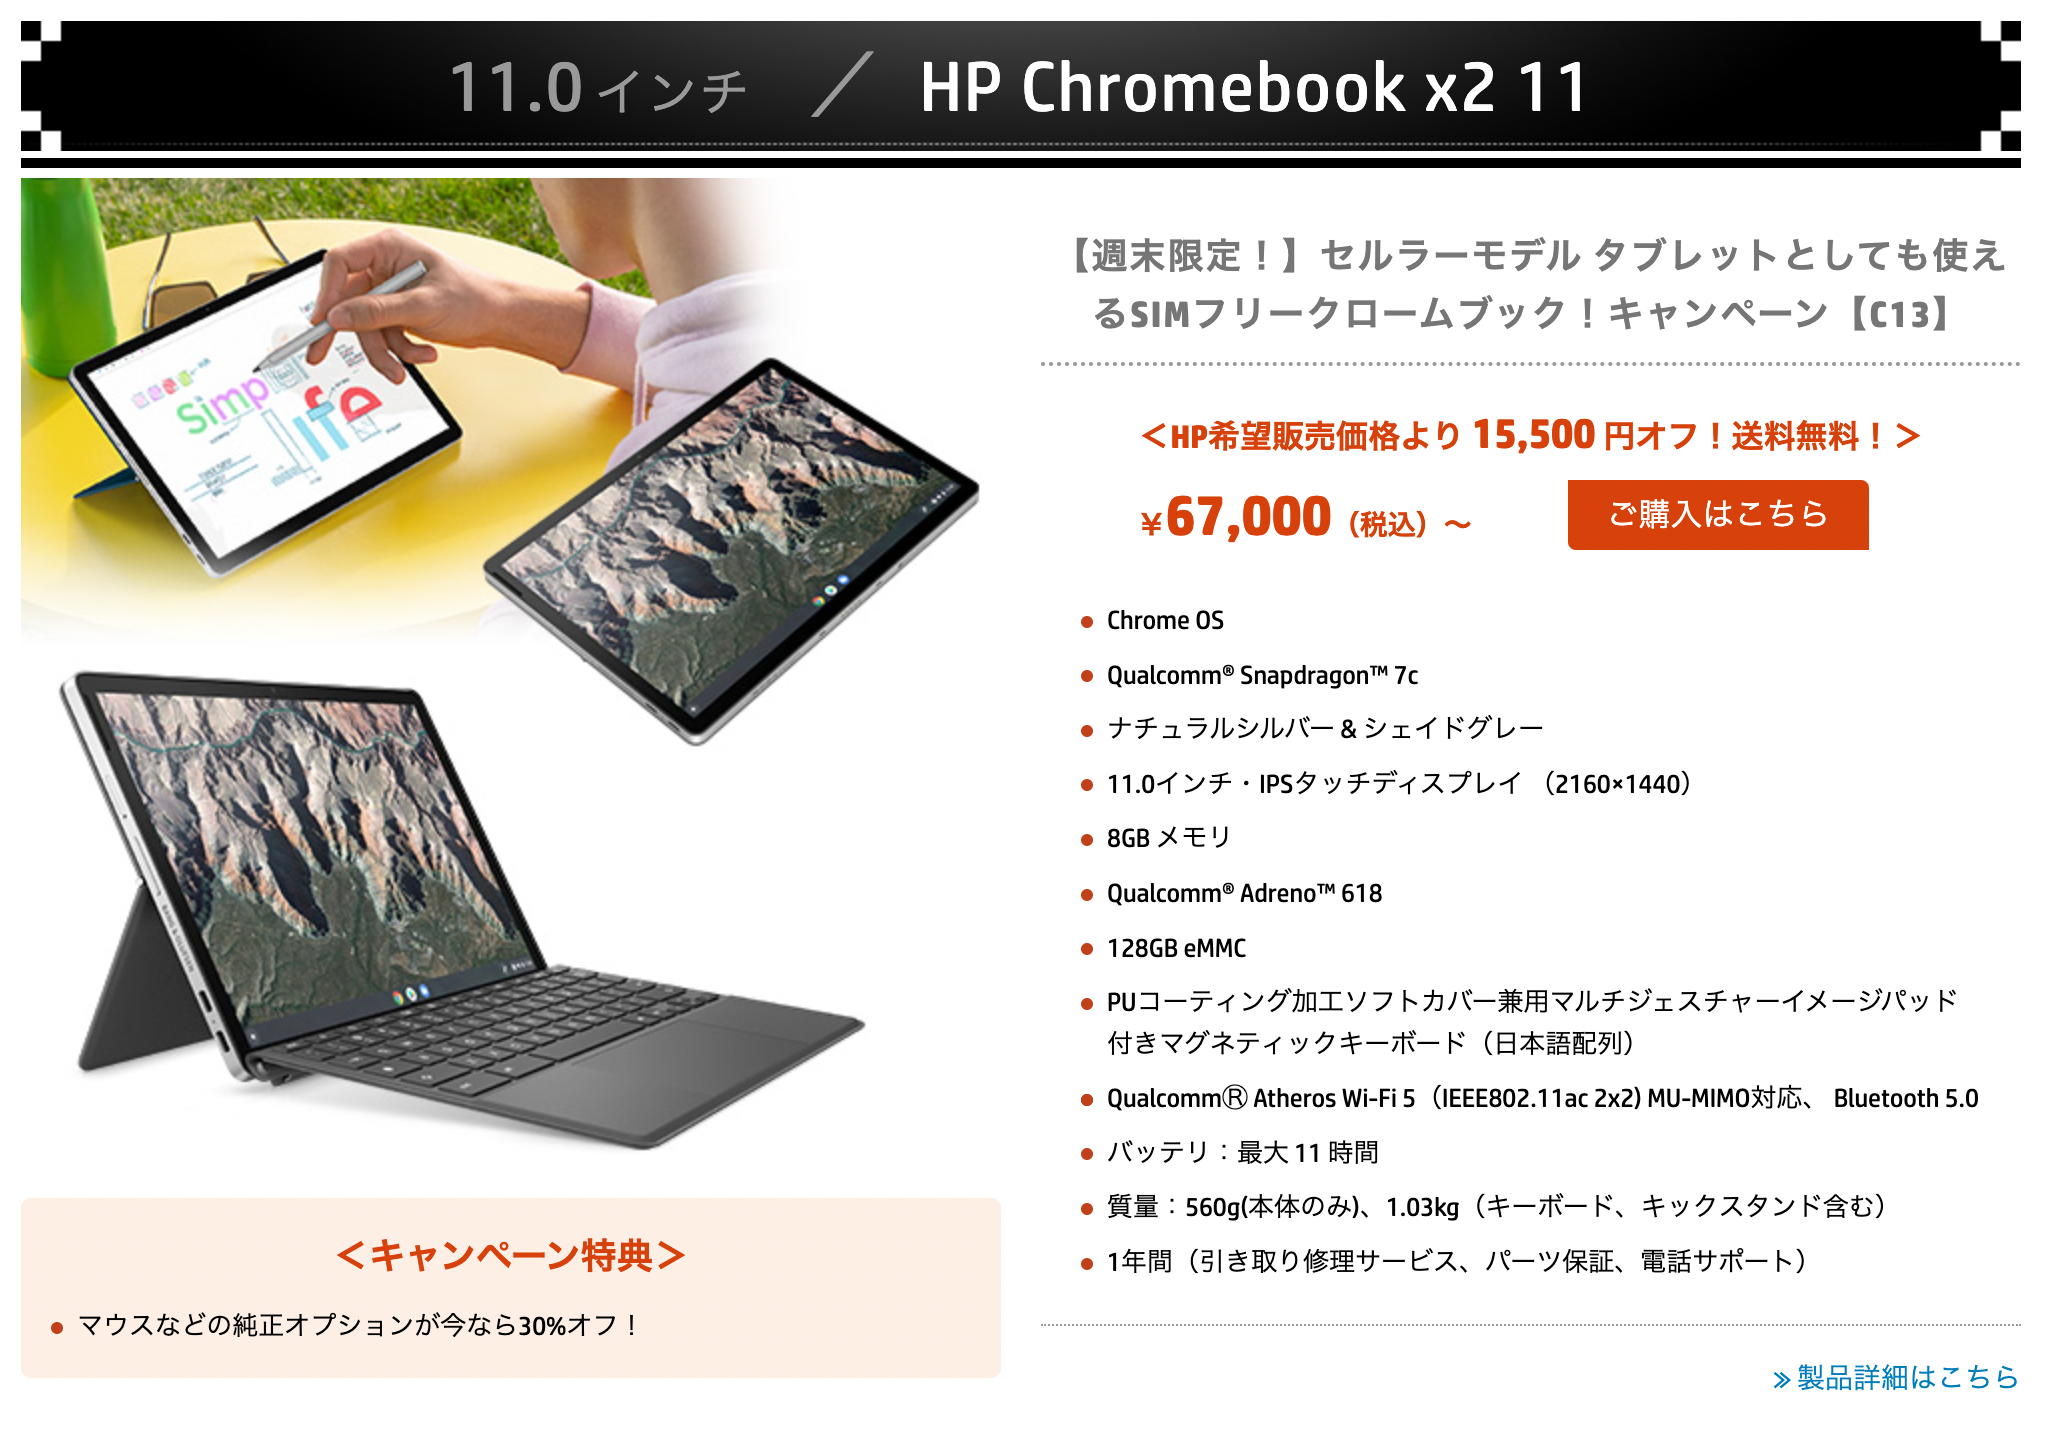 かぶ] HP週末限定セールでHP Chromebook x2 11のセルラーモデルが67,000円に。実質価格重視なら楽天のお買い物マラソン利用もあり。